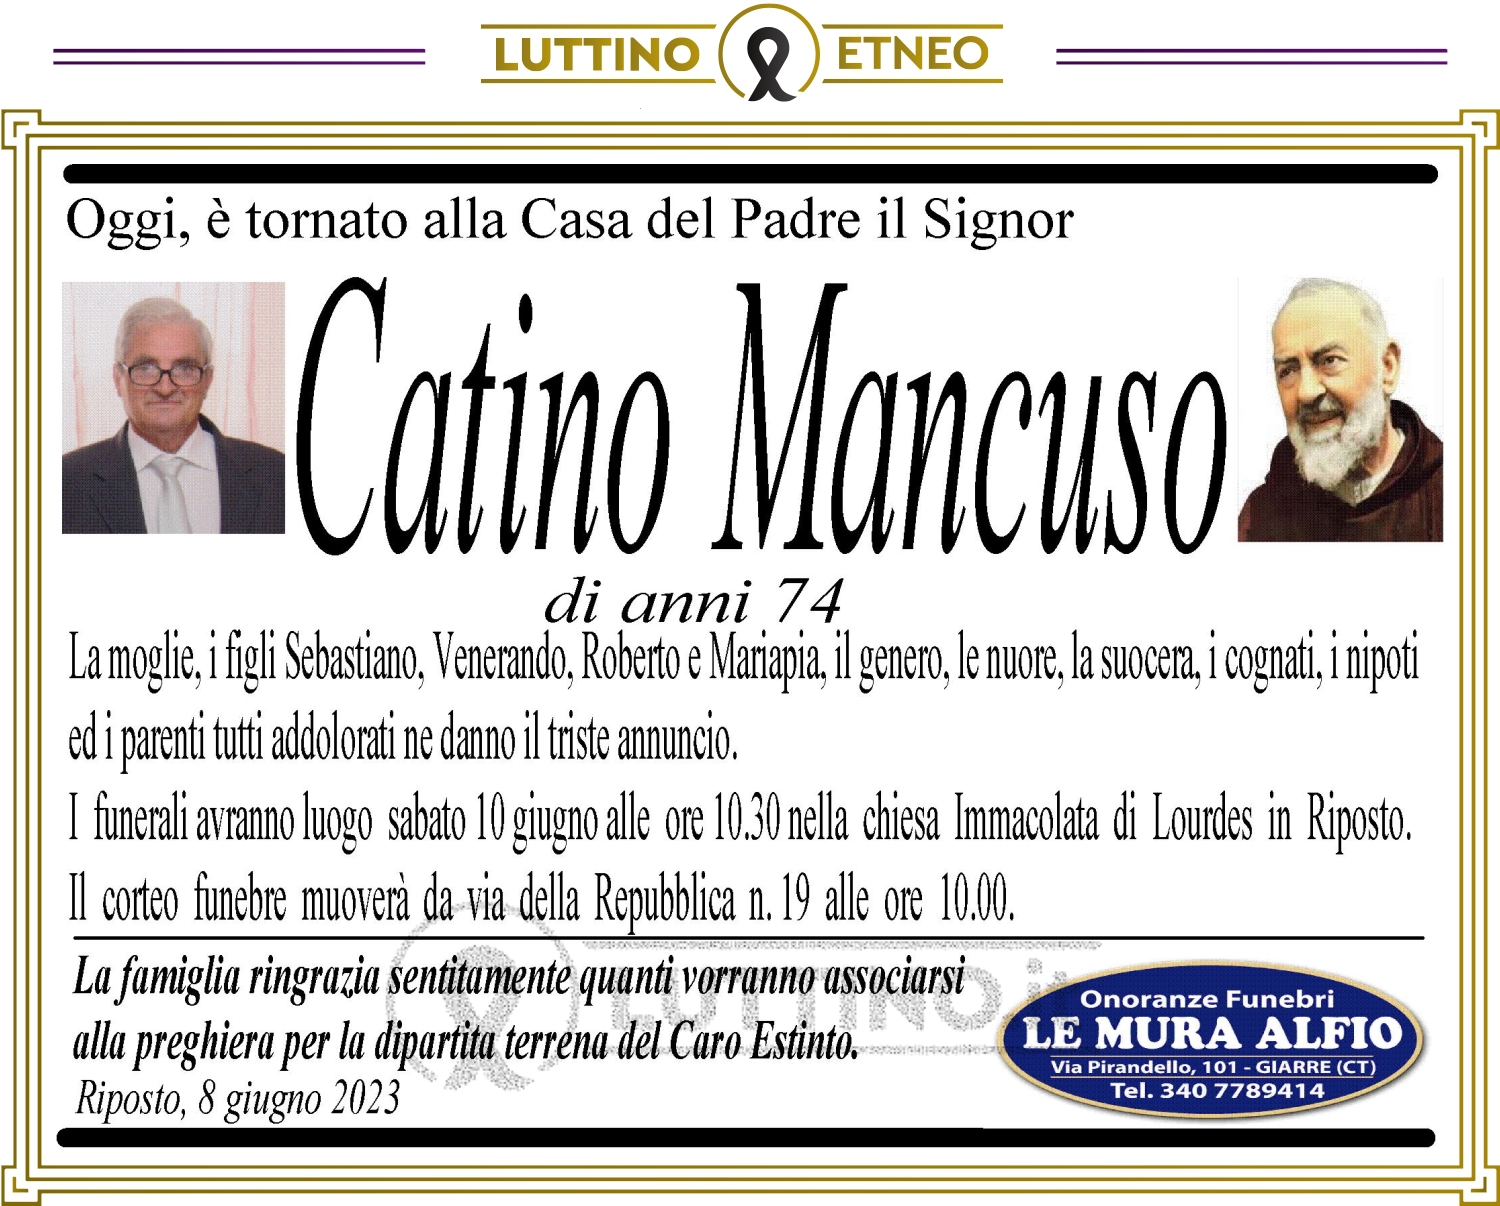 Catino Mancuso